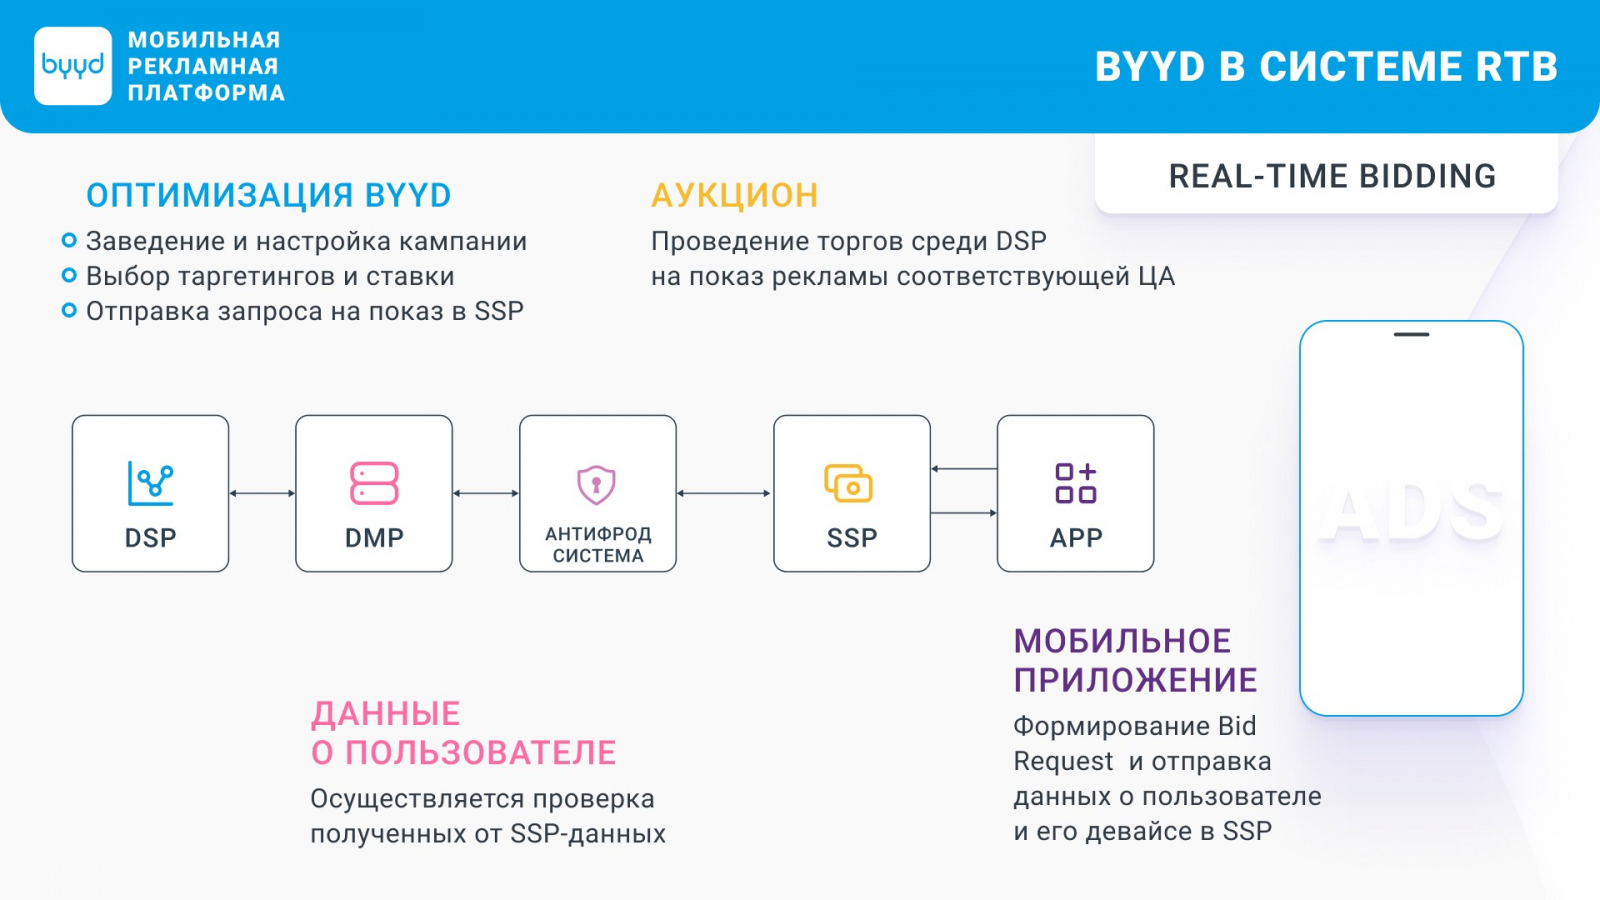 Узнайте больше про платформу BYYD из презентации.